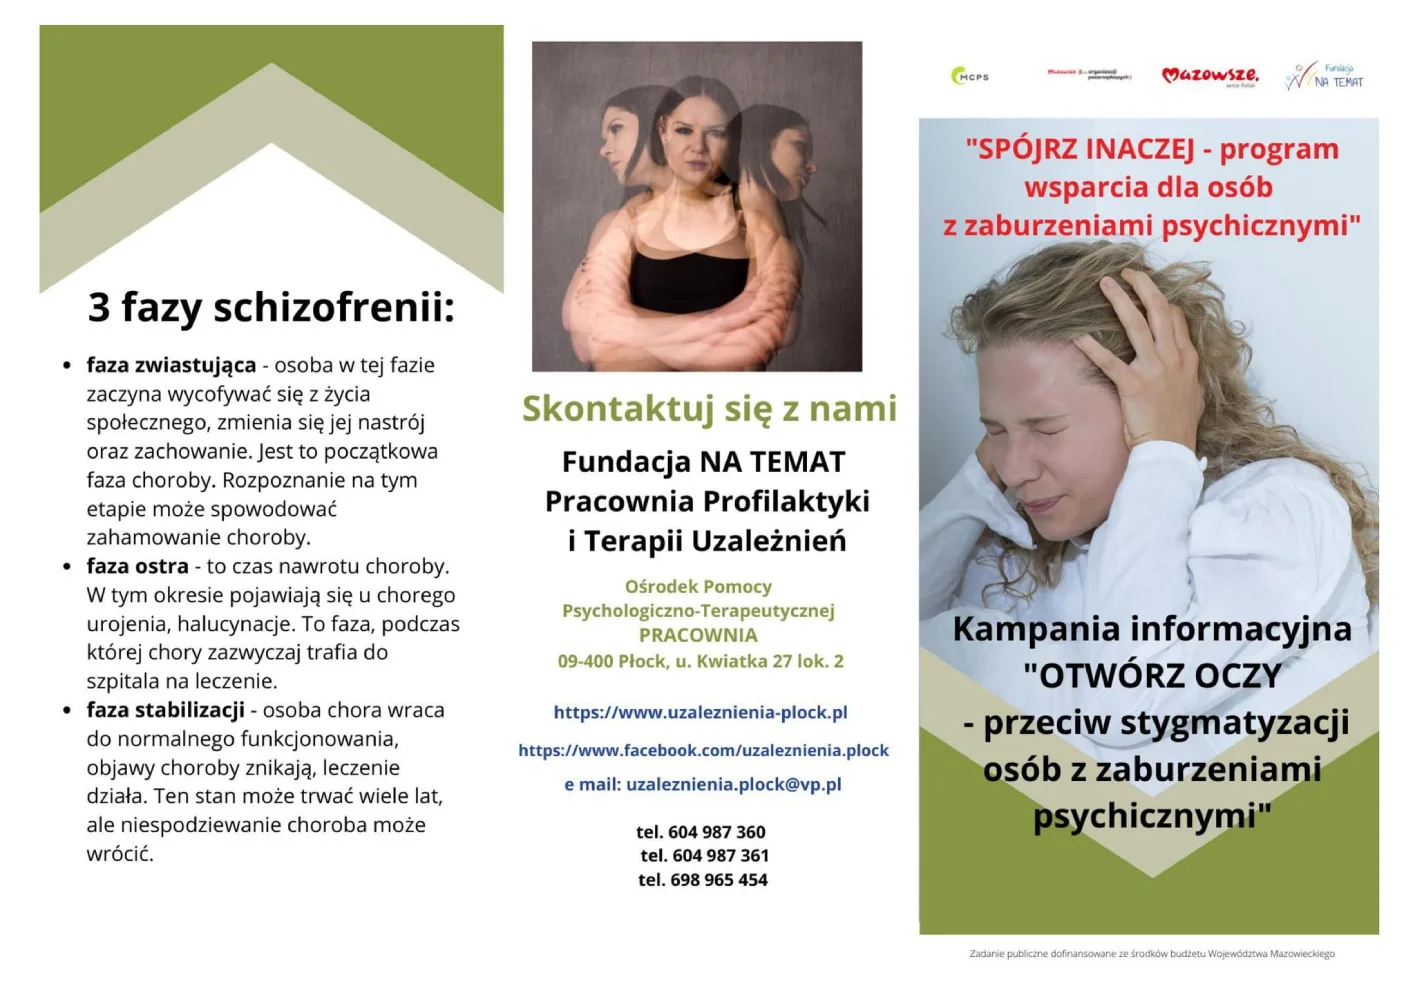 Spójrz inaczej broszura cz. 1 - Schizofrenia